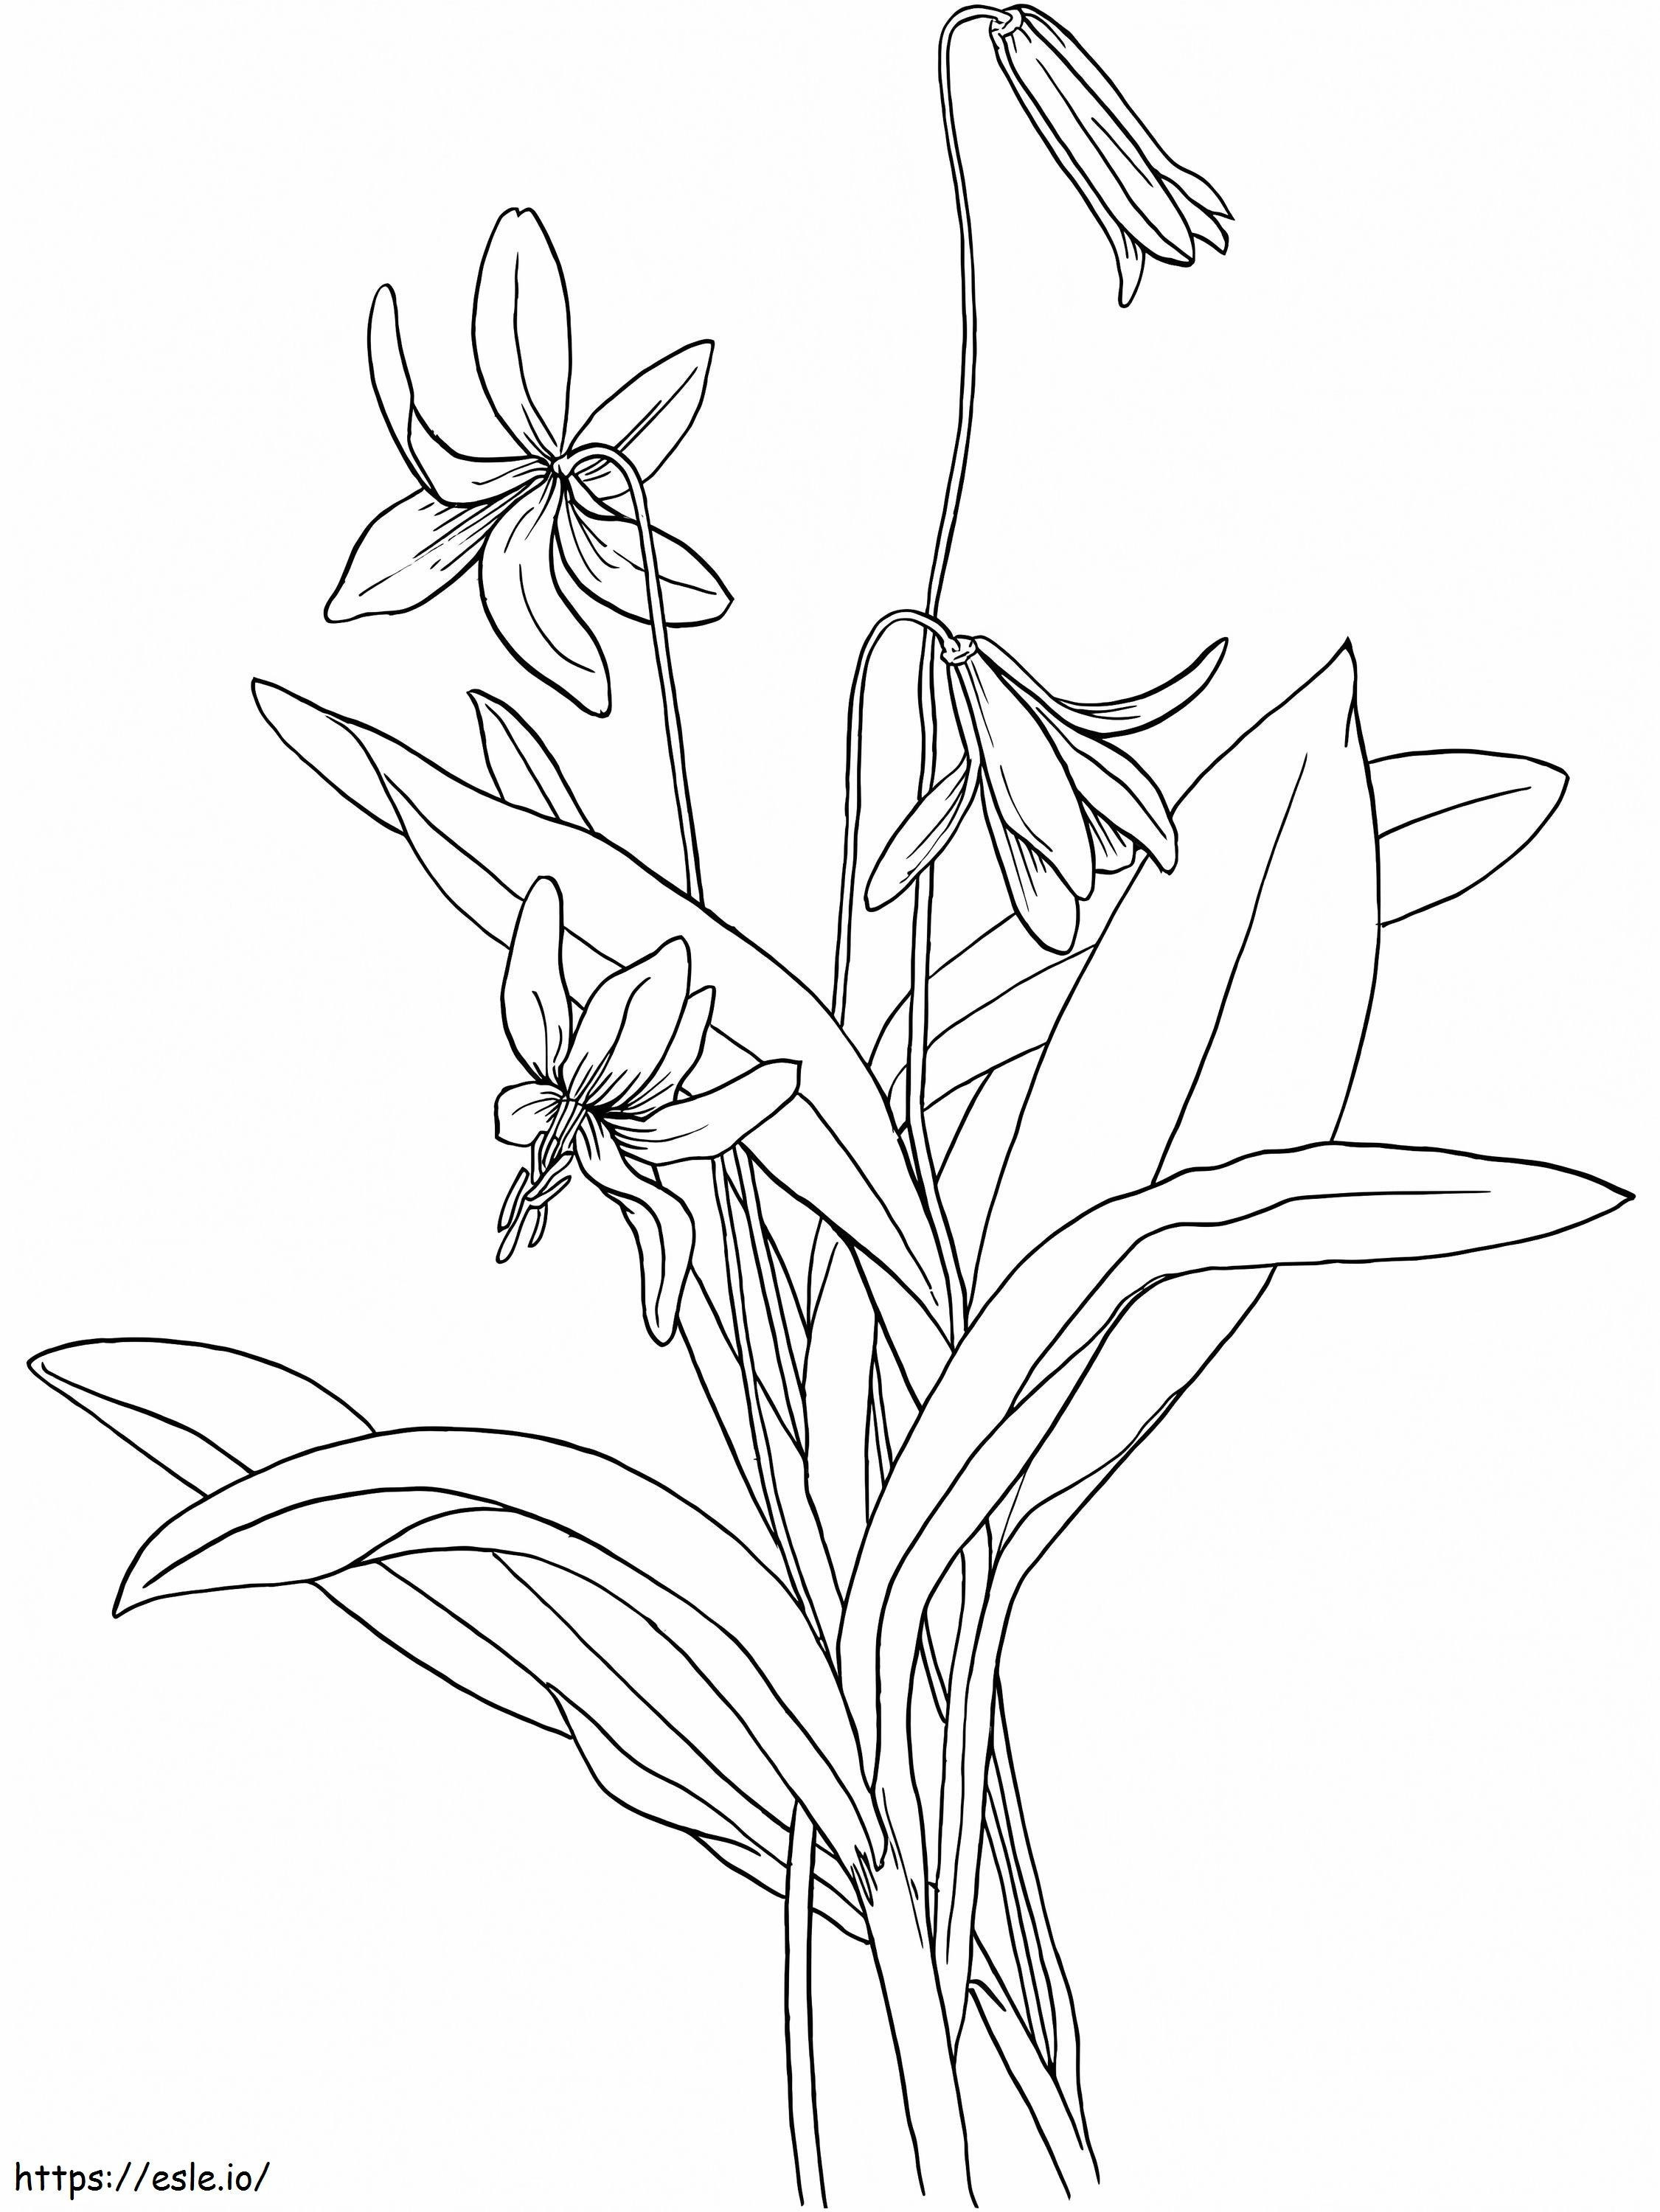 Coloriage Fleur De Violettes 1 à imprimer dessin